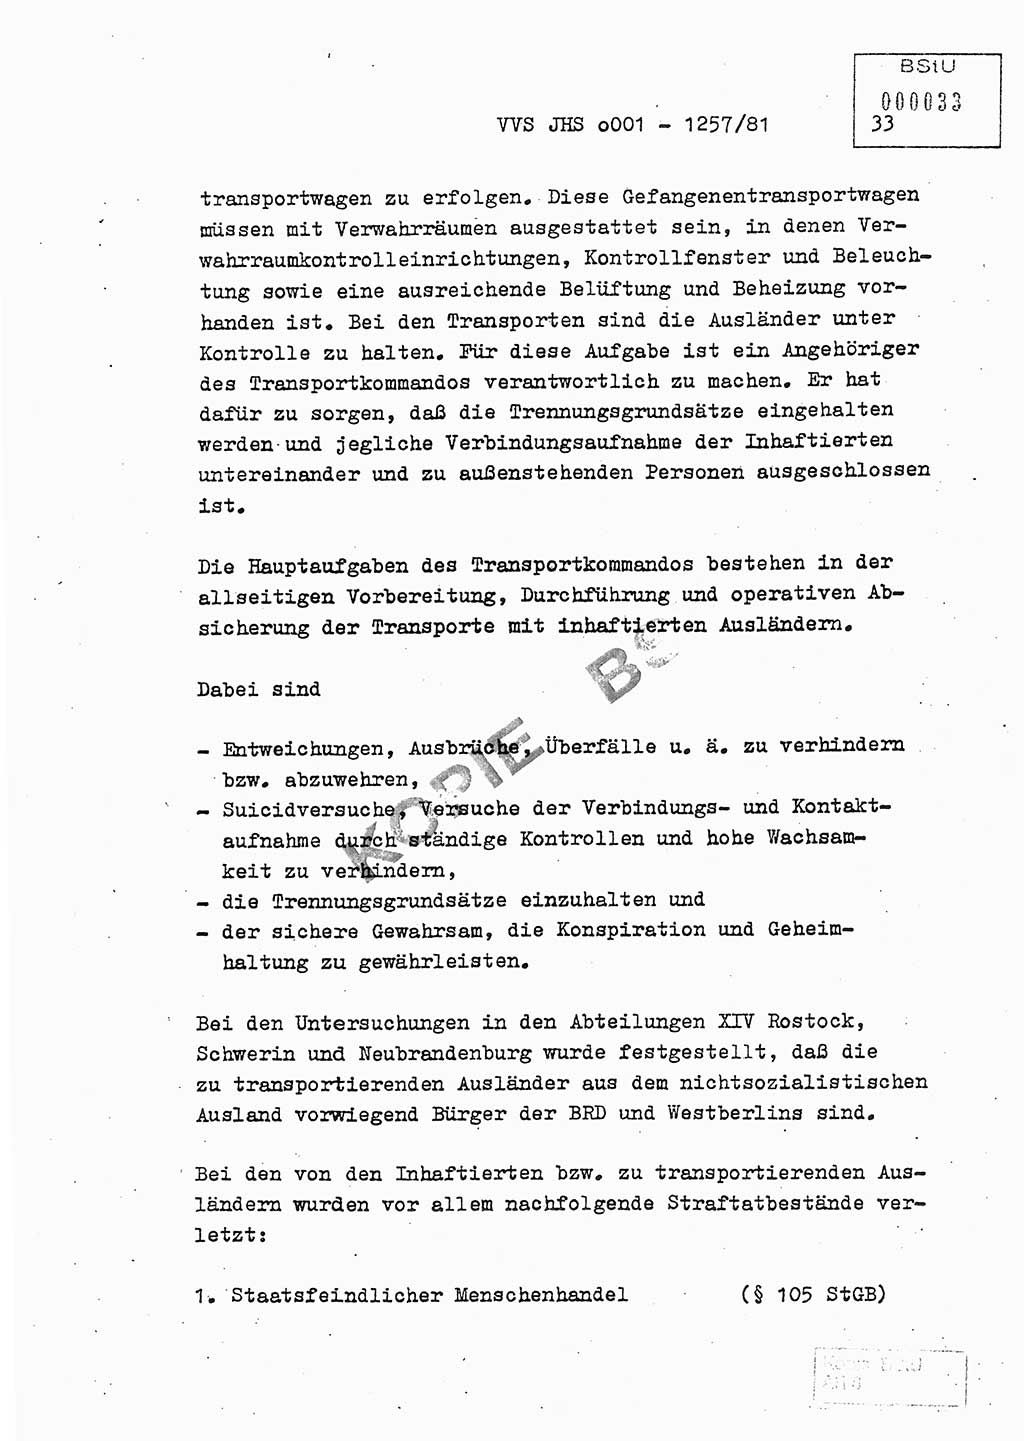 Fachschulabschlußarbeit Unterleutnant Dieter Möller (BV Rst. Abt. ⅩⅣ), Ministerium für Staatssicherheit (MfS) [Deutsche Demokratische Republik (DDR)], Juristische Hochschule (JHS), Vertrauliche Verschlußsache (VVS) o001-1257/81, Potsdam 1982, Seite 33 (FS-Abschl.-Arb. MfS DDR JHS VVS o001-1257/81 1982, S. 33)